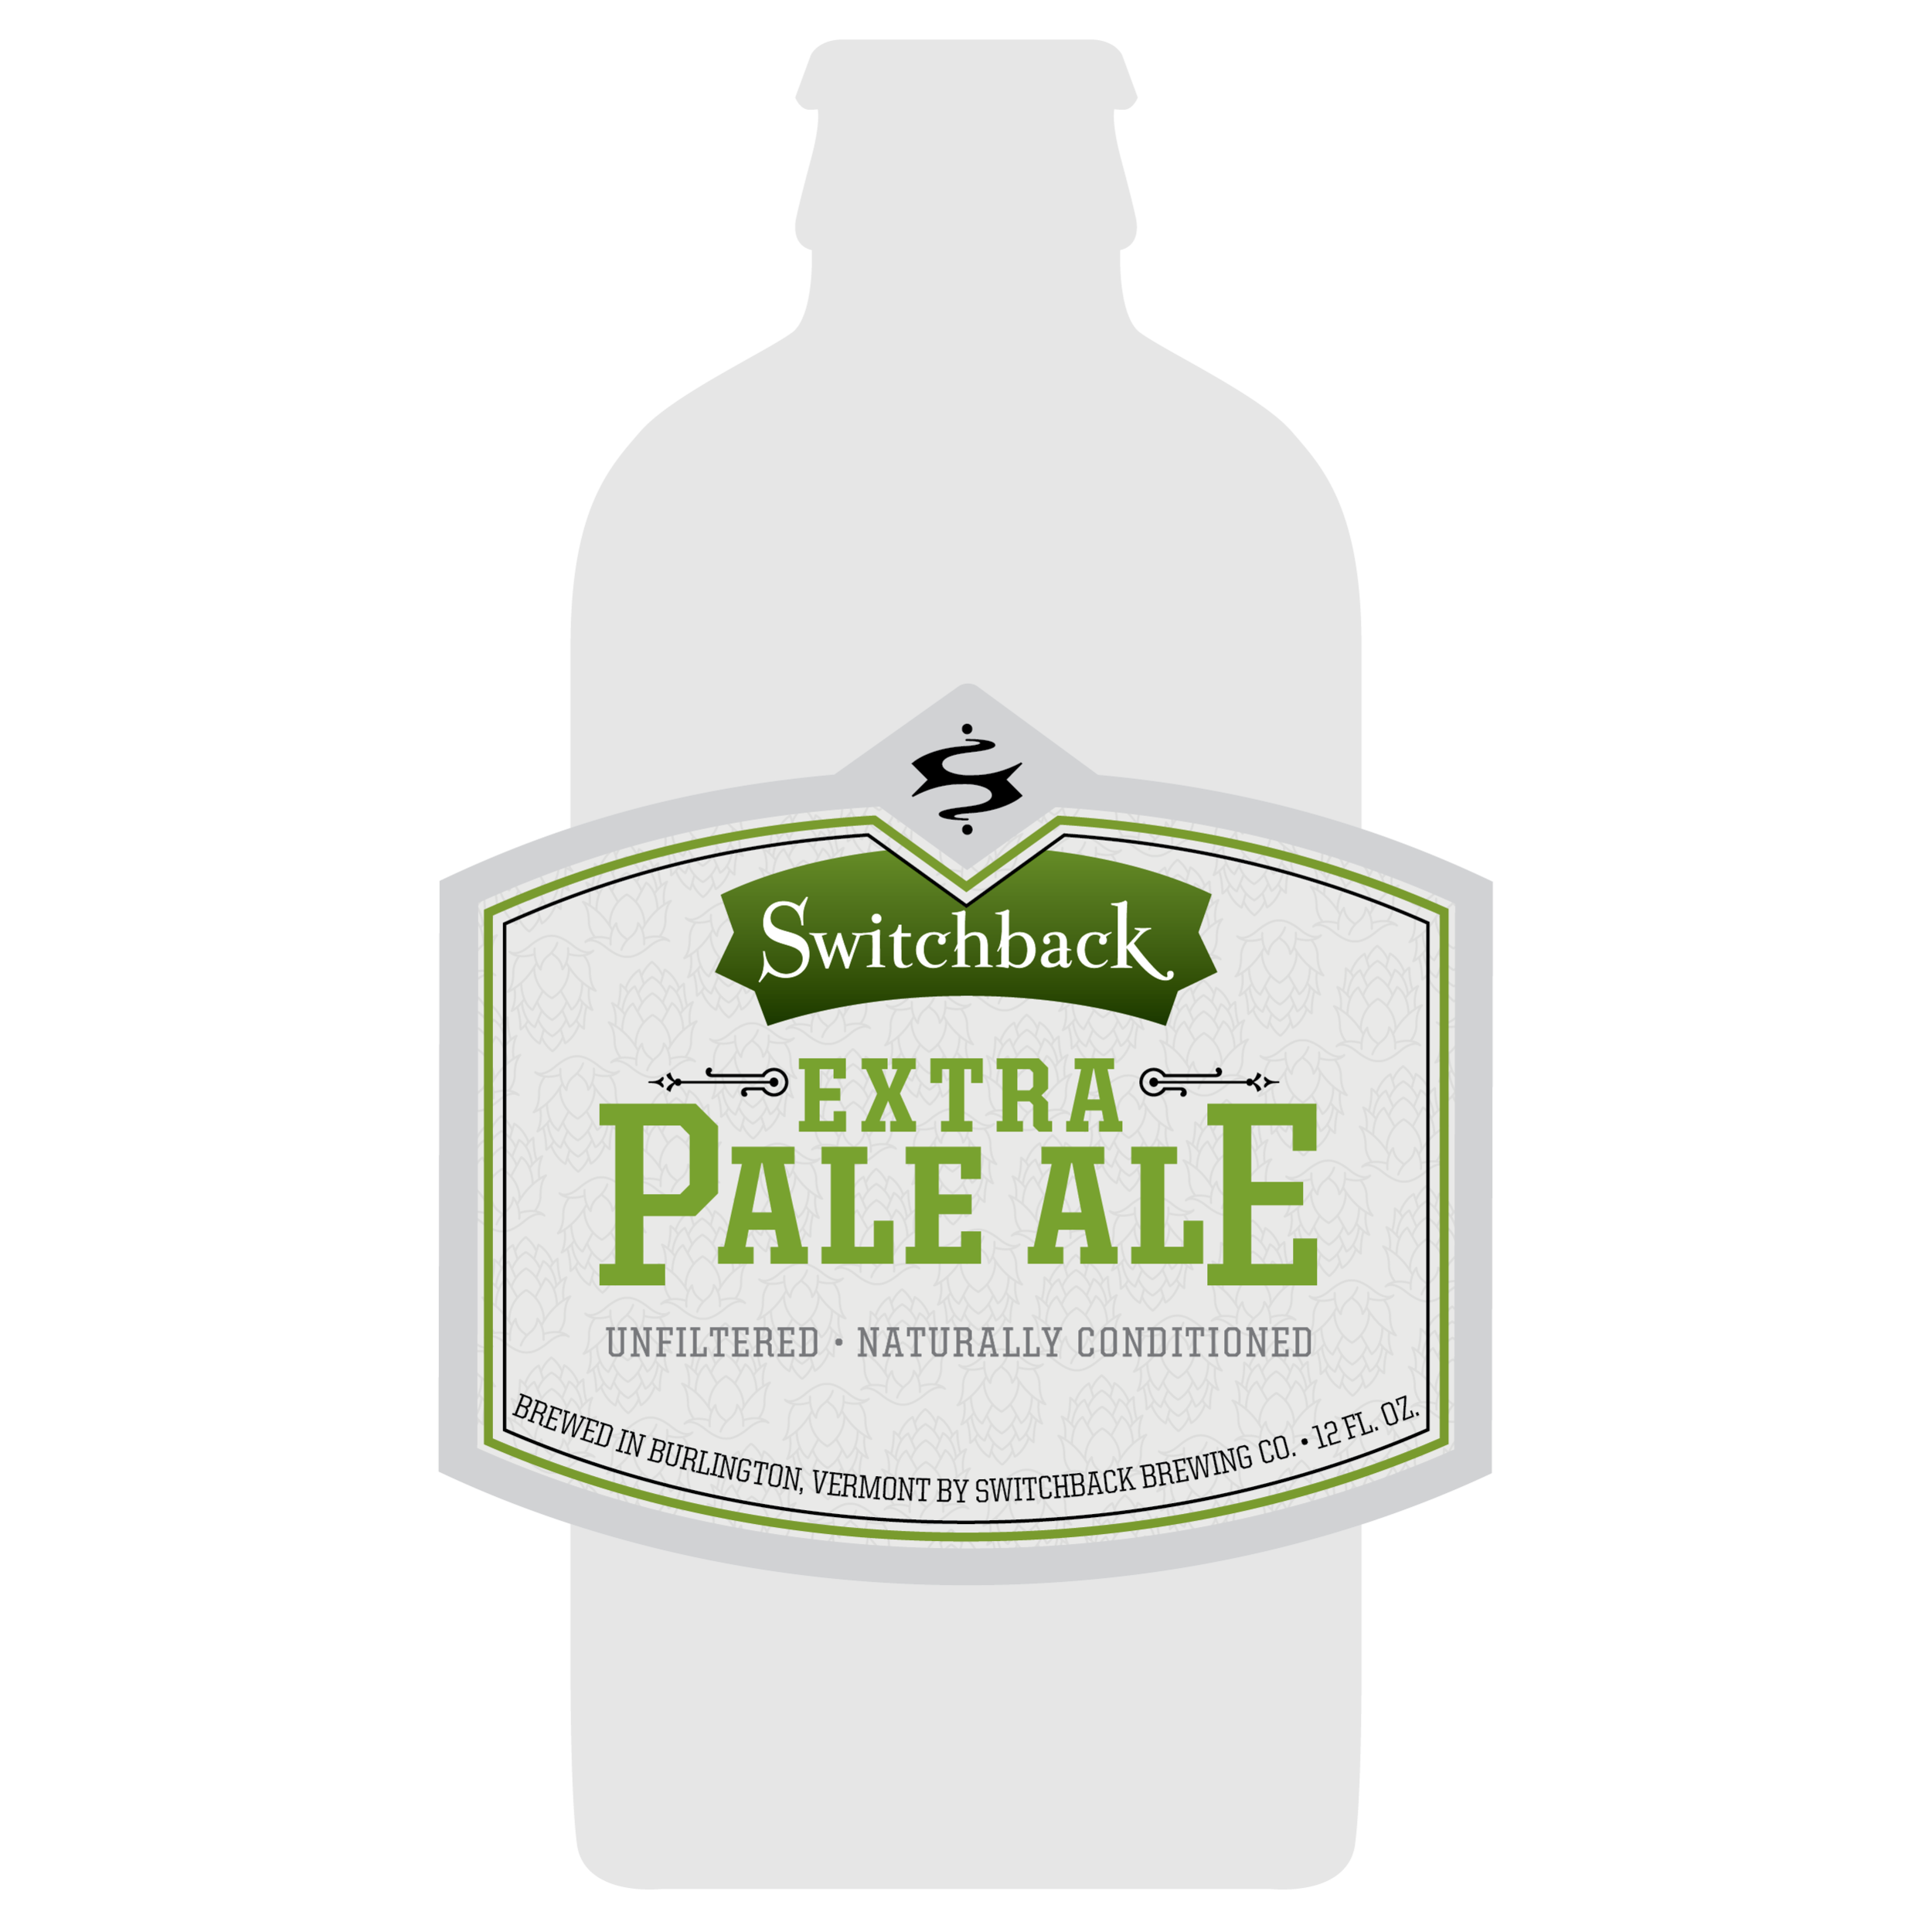 Interrobang's 12oz bottle label design for Switchback Extra Pale Ale